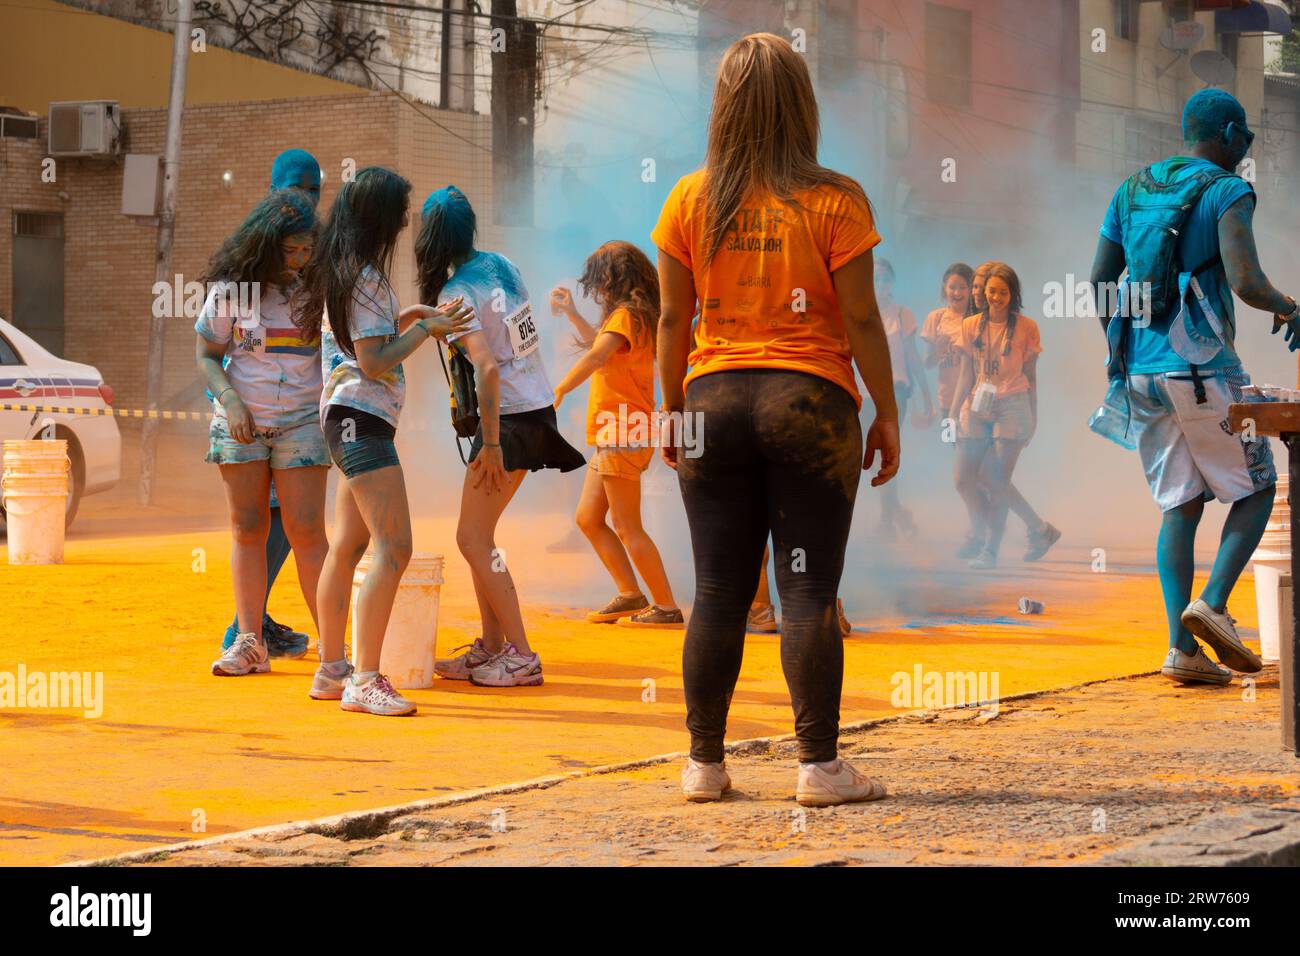 Salvador, Bahia, Brasilien - 22. März 2015: Die Leute haben Spaß mit Farbpulver während eines bunten Rennens im Dique do Tororo in der Stadt Salvador, Bahia. Stockfoto